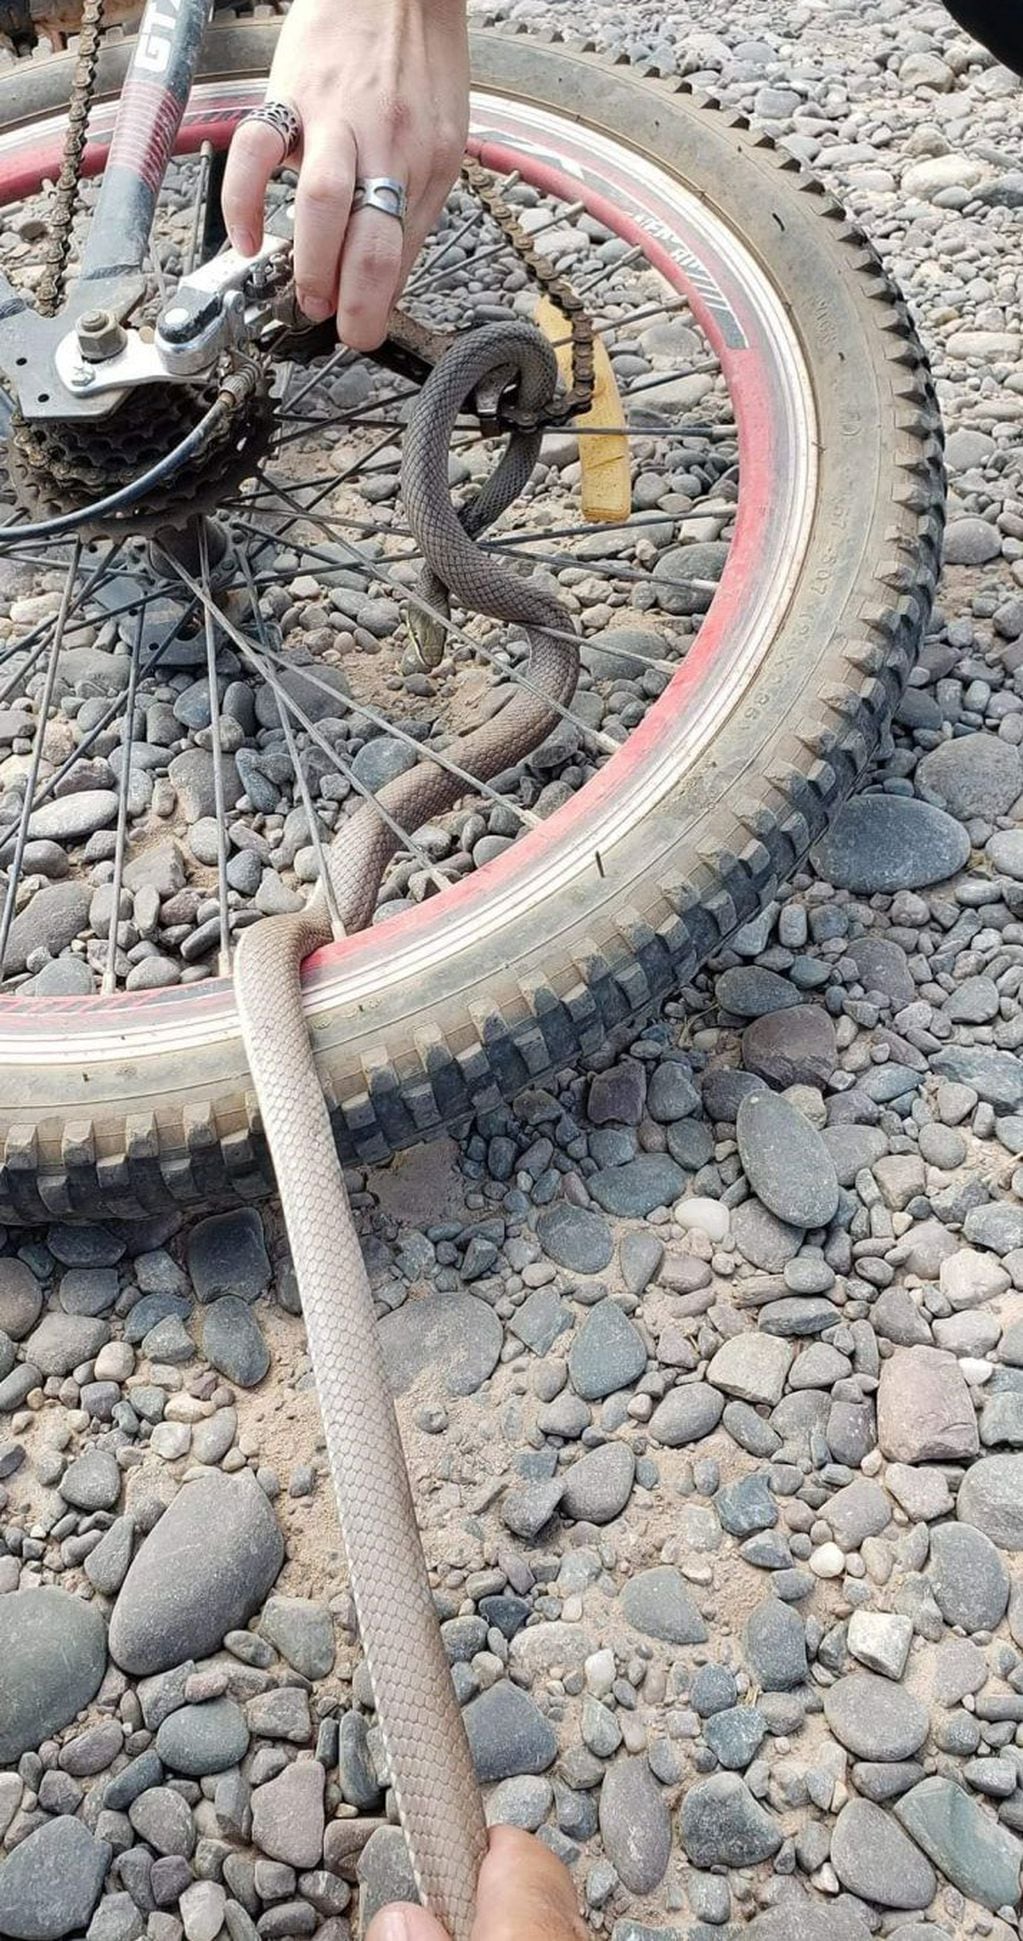 Una ciclista encontró una serpiente enredada en su bicicleta mientras pedaleaba.